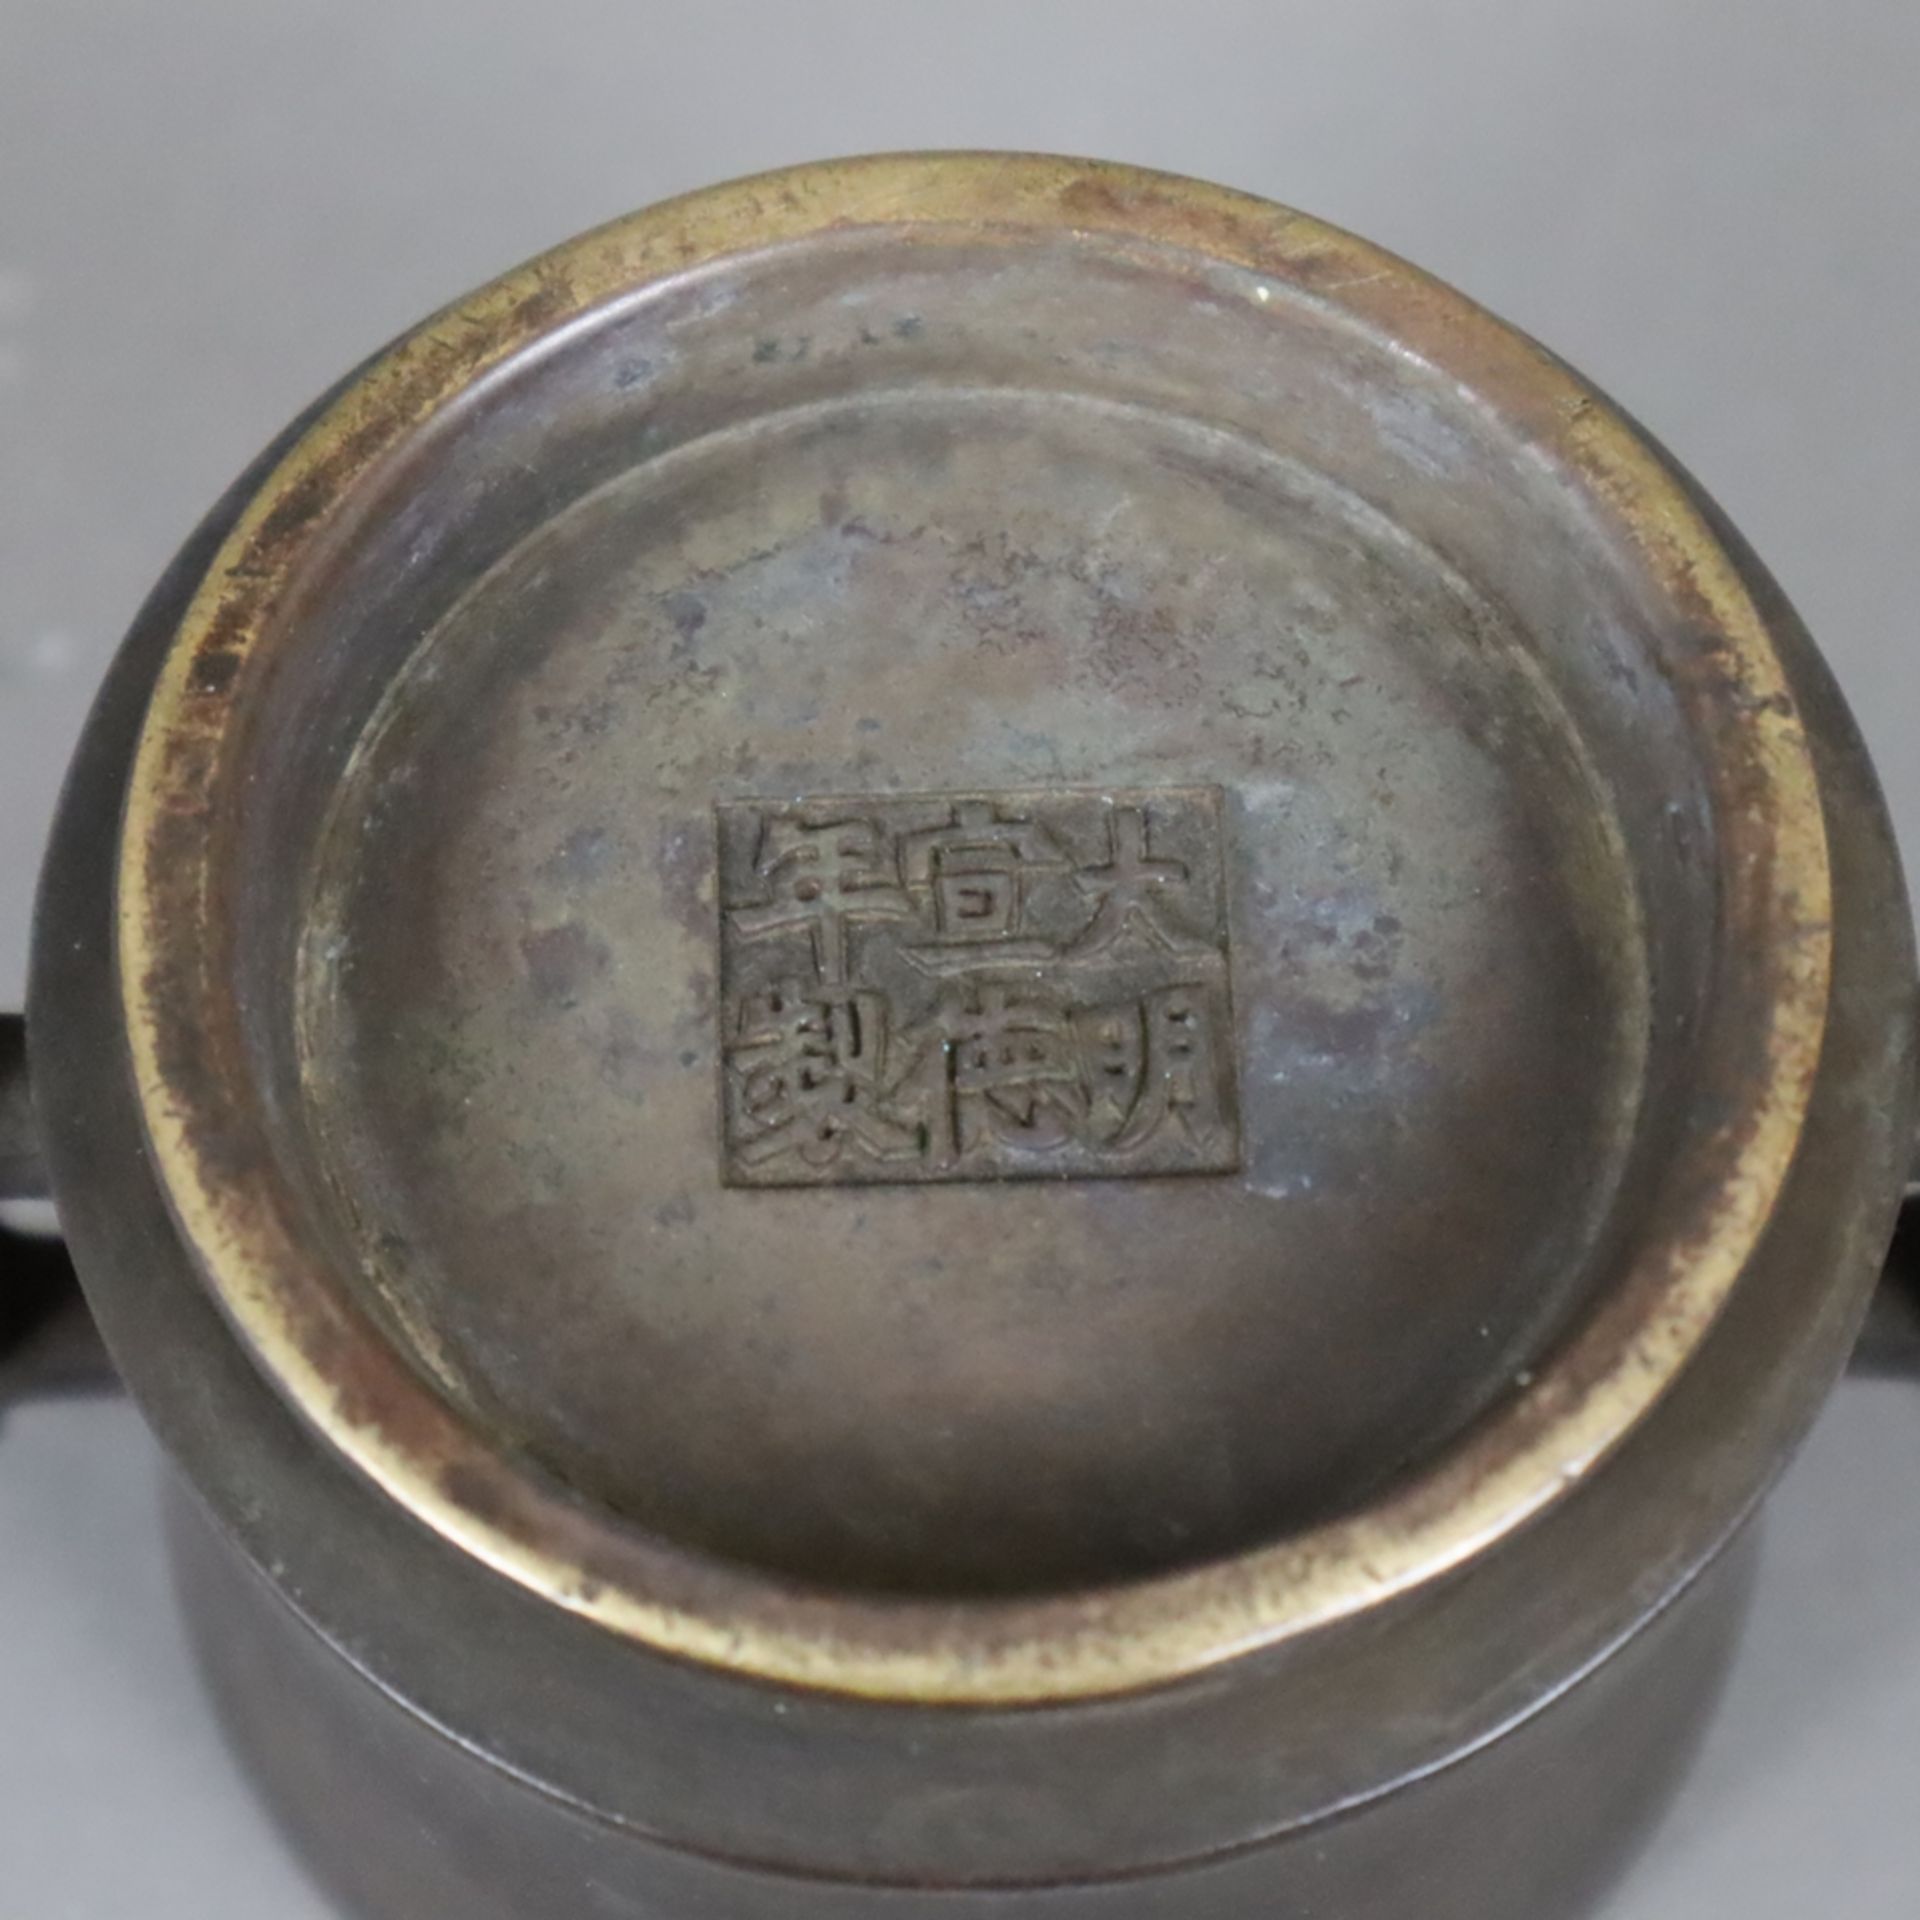 Weihrauchbrenner aus Bronze - China, Qing-Dynastie, zylindrische leicht konkav eingezogene Wandung - Image 5 of 6